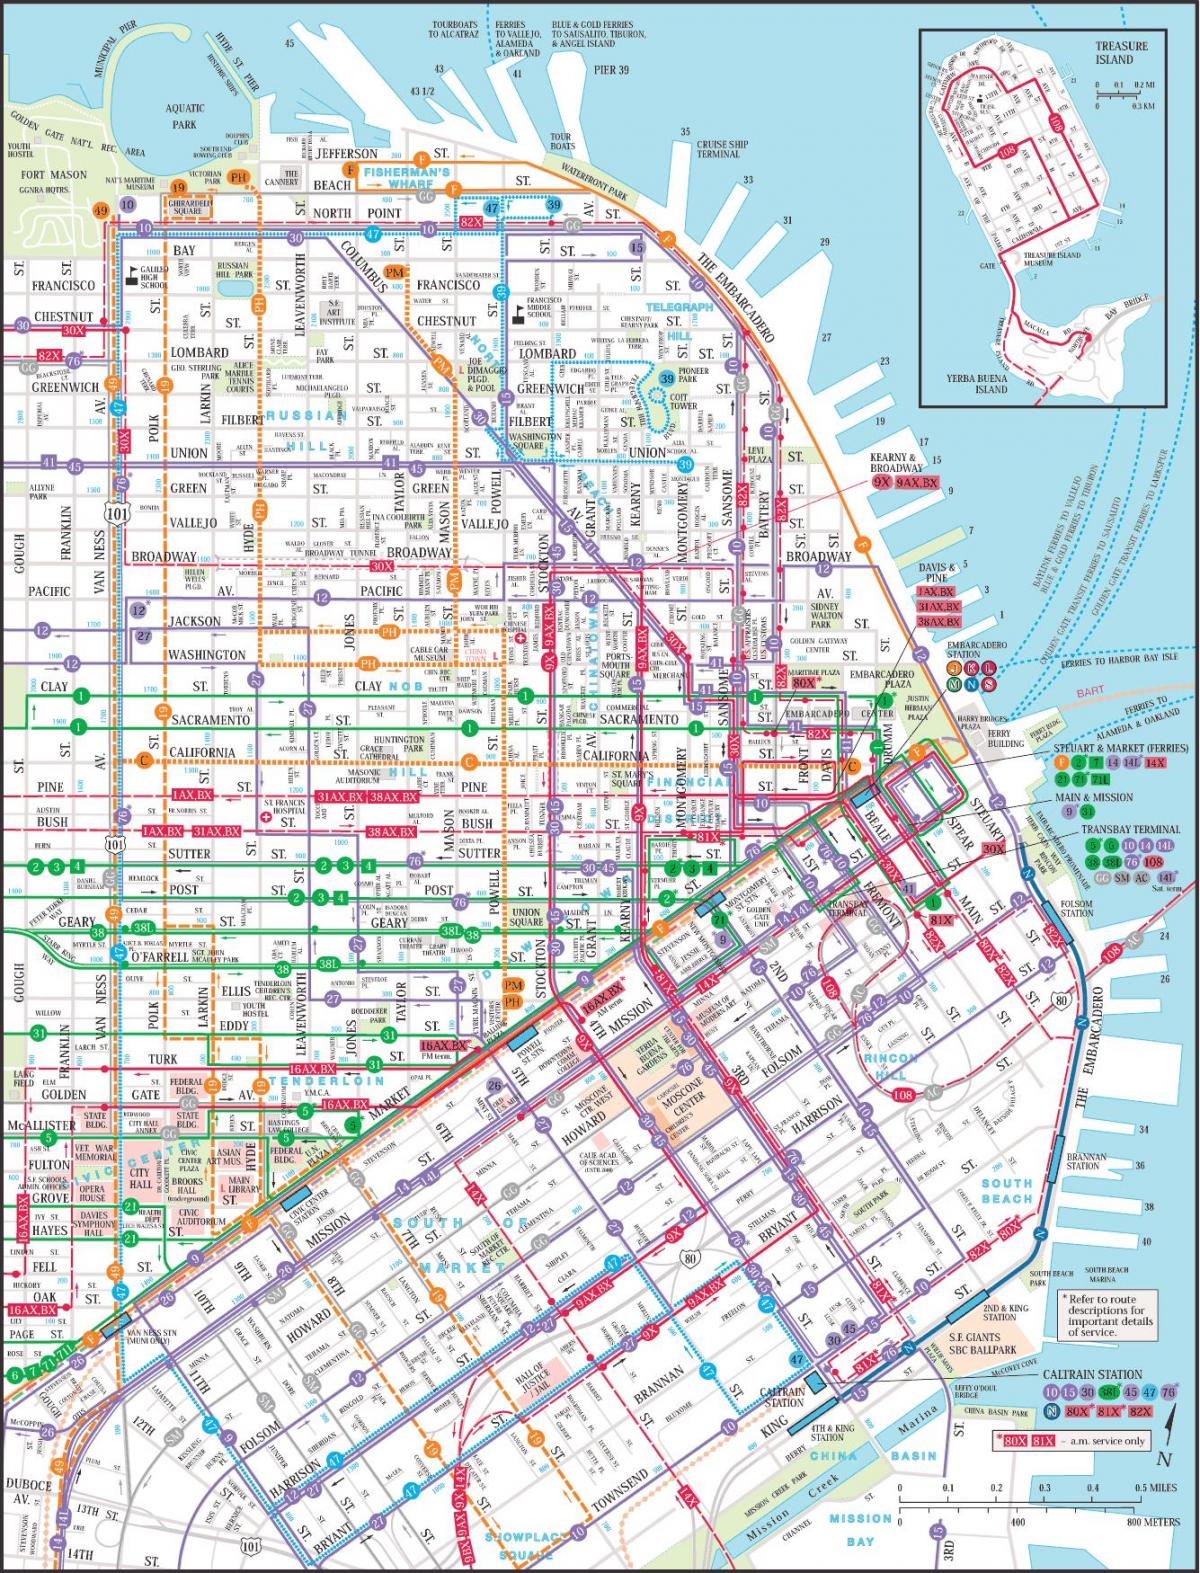 San Francisco javni prevoz je mapa